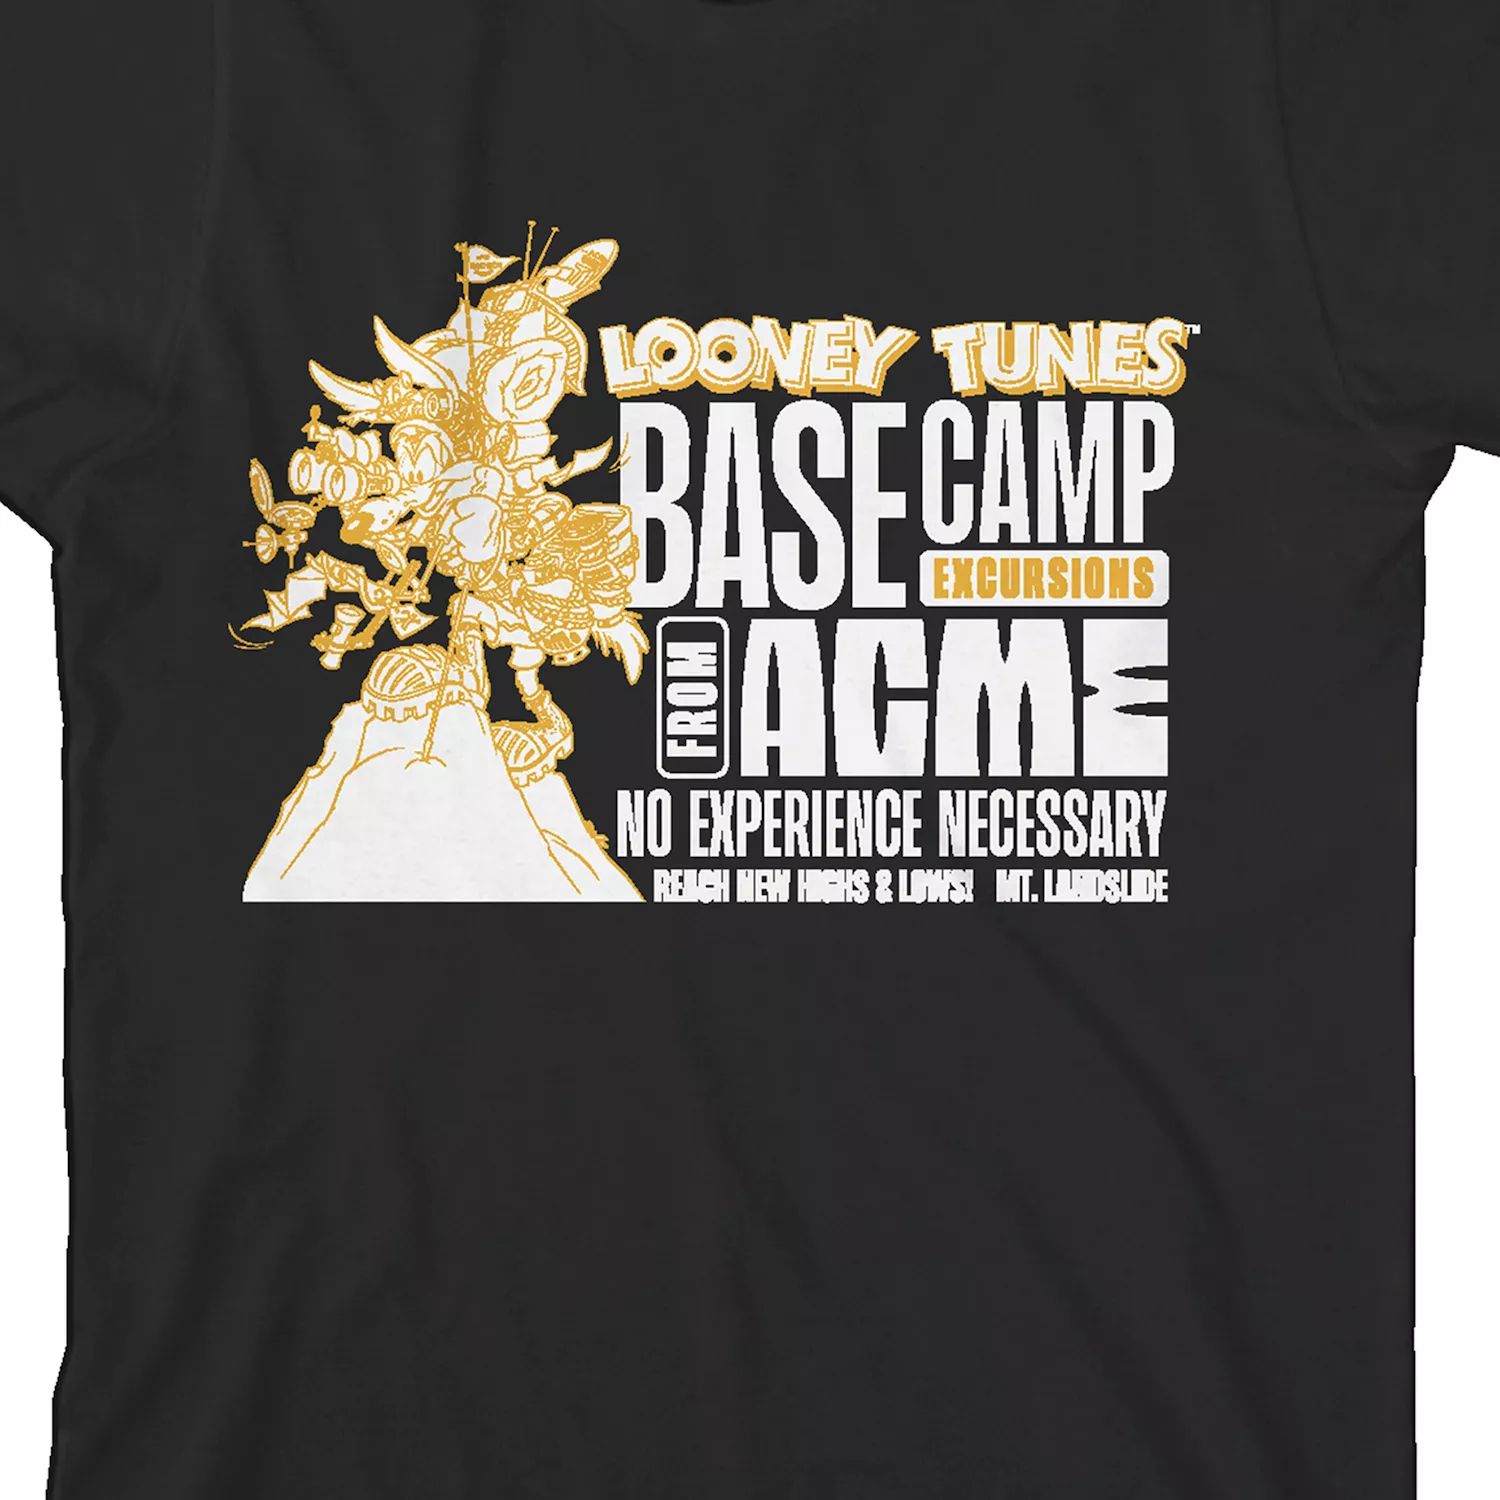 Футболка с рисунком «Базовый лагерь Looney Tunes» для мальчиков 8–20 лет Licensed Character футболка с рисунком looney tunes vacations для мальчиков 8–20 лет licensed character